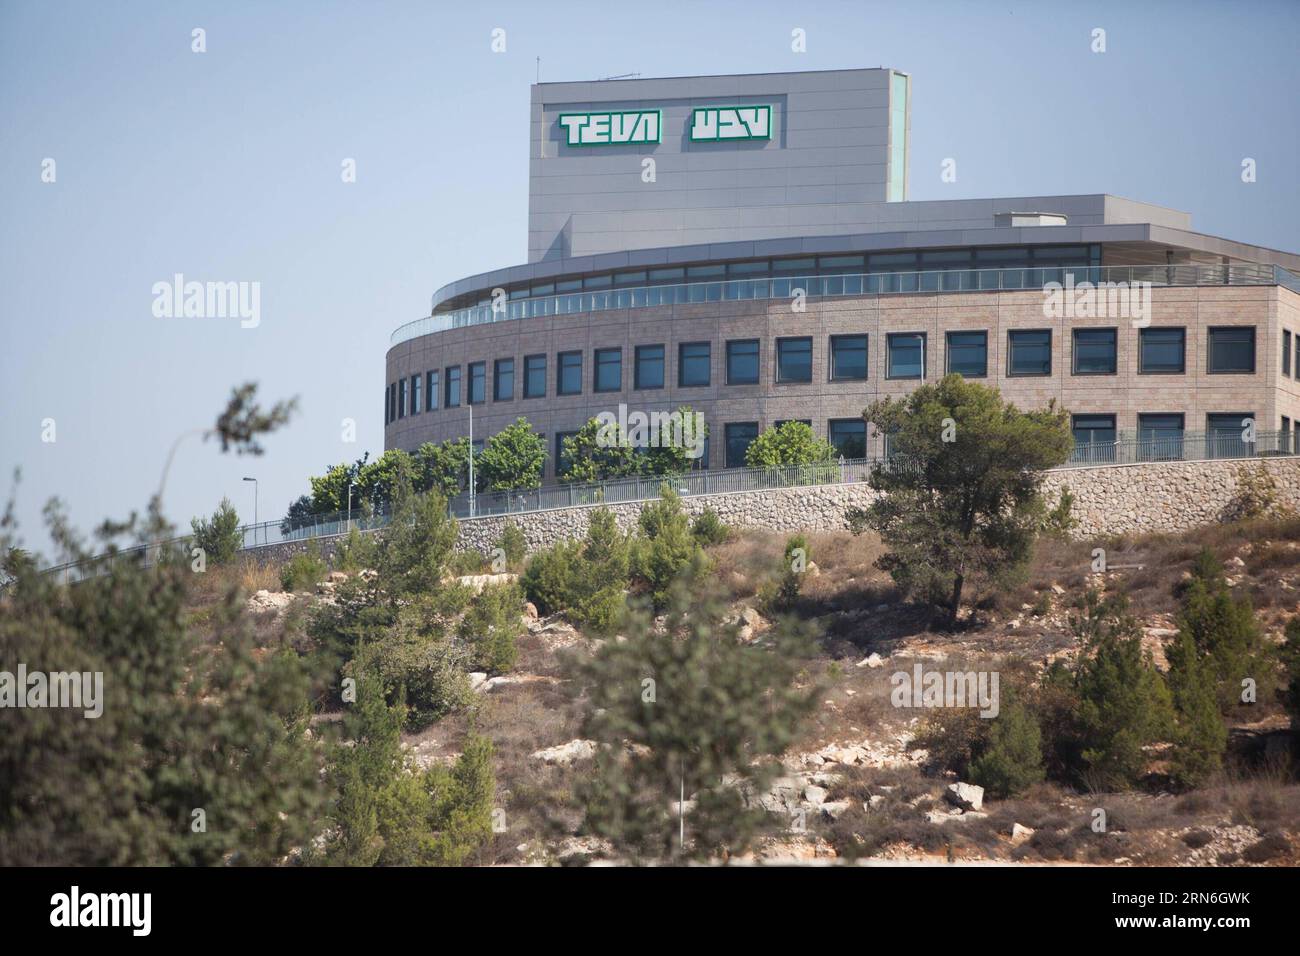 La foto del file scattata l'11 ottobre 2013 mostra una visione generale dell'azienda farmaceutica israeliana Teva Pharmaceutical Industries a Gerusalemme. La farmacia israeliana Teva, la più grande del suo genere al mondo, ha annunciato il 27 luglio 2015 di aver firmato un accordo per acquisire l'unità generica della società farmaceutica irlandese Allergan per 40,5 miliardi di dollari. ) ISRAEL-TEVA-IRELAND-ALLERGAN-GENERIC DRUG UNIT-BUYING JINI PUBLICATIONXNOTXINXCHN Foto Stock